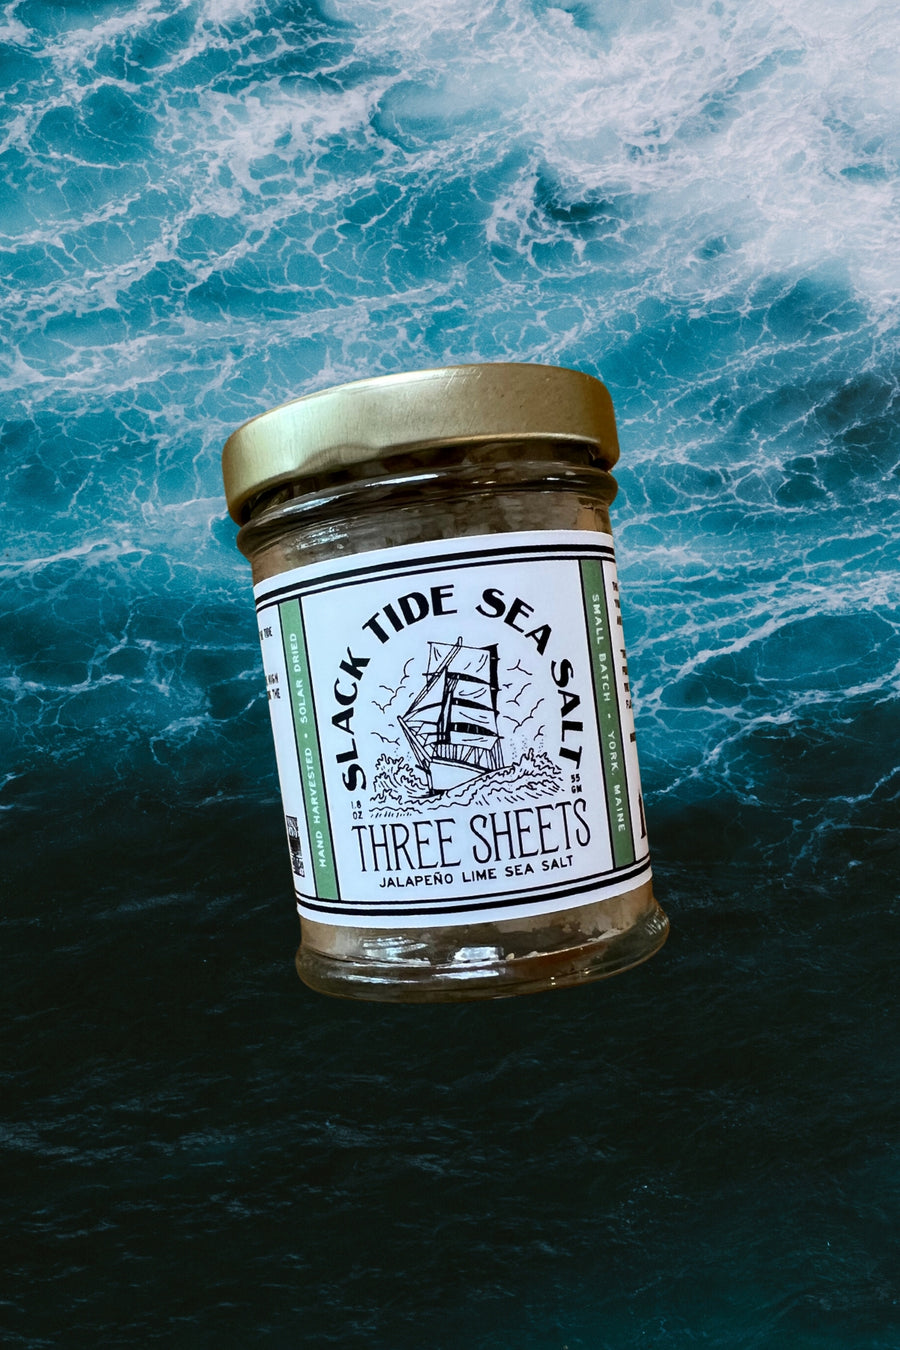 Three Sheets Jalapeño Lime Sea Salt - Slack Tide Sea Salt